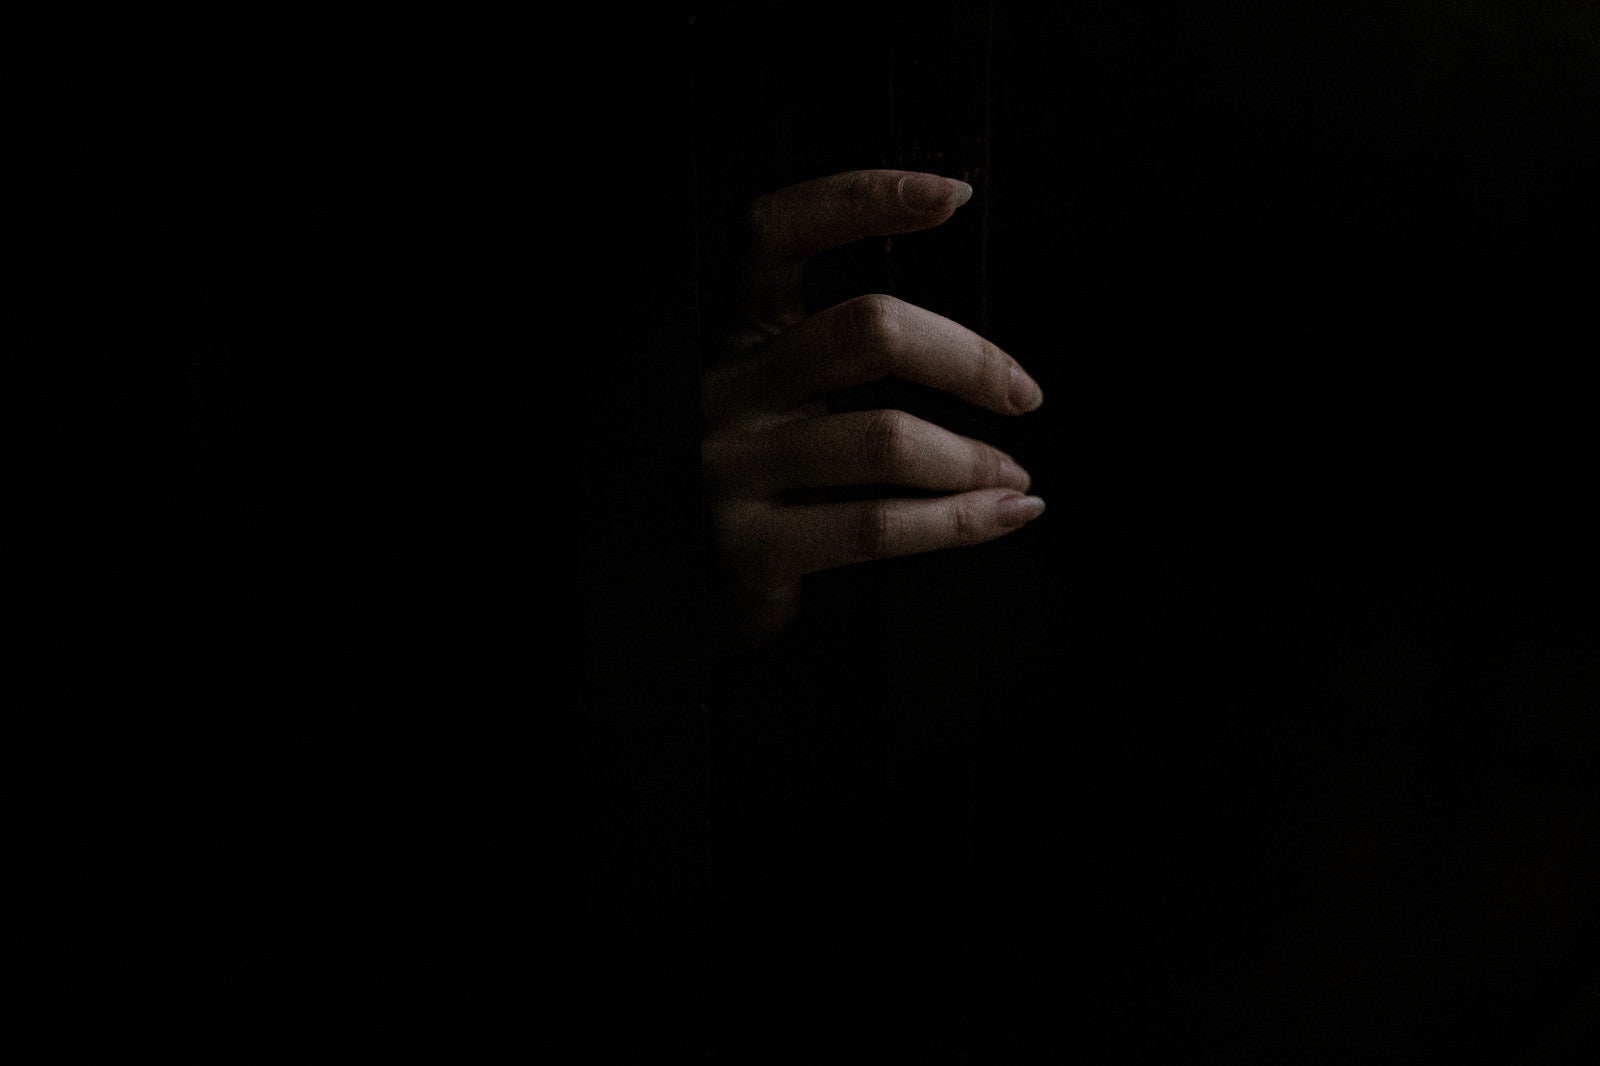 「暗闇からスゥーっと女性の手が」の写真